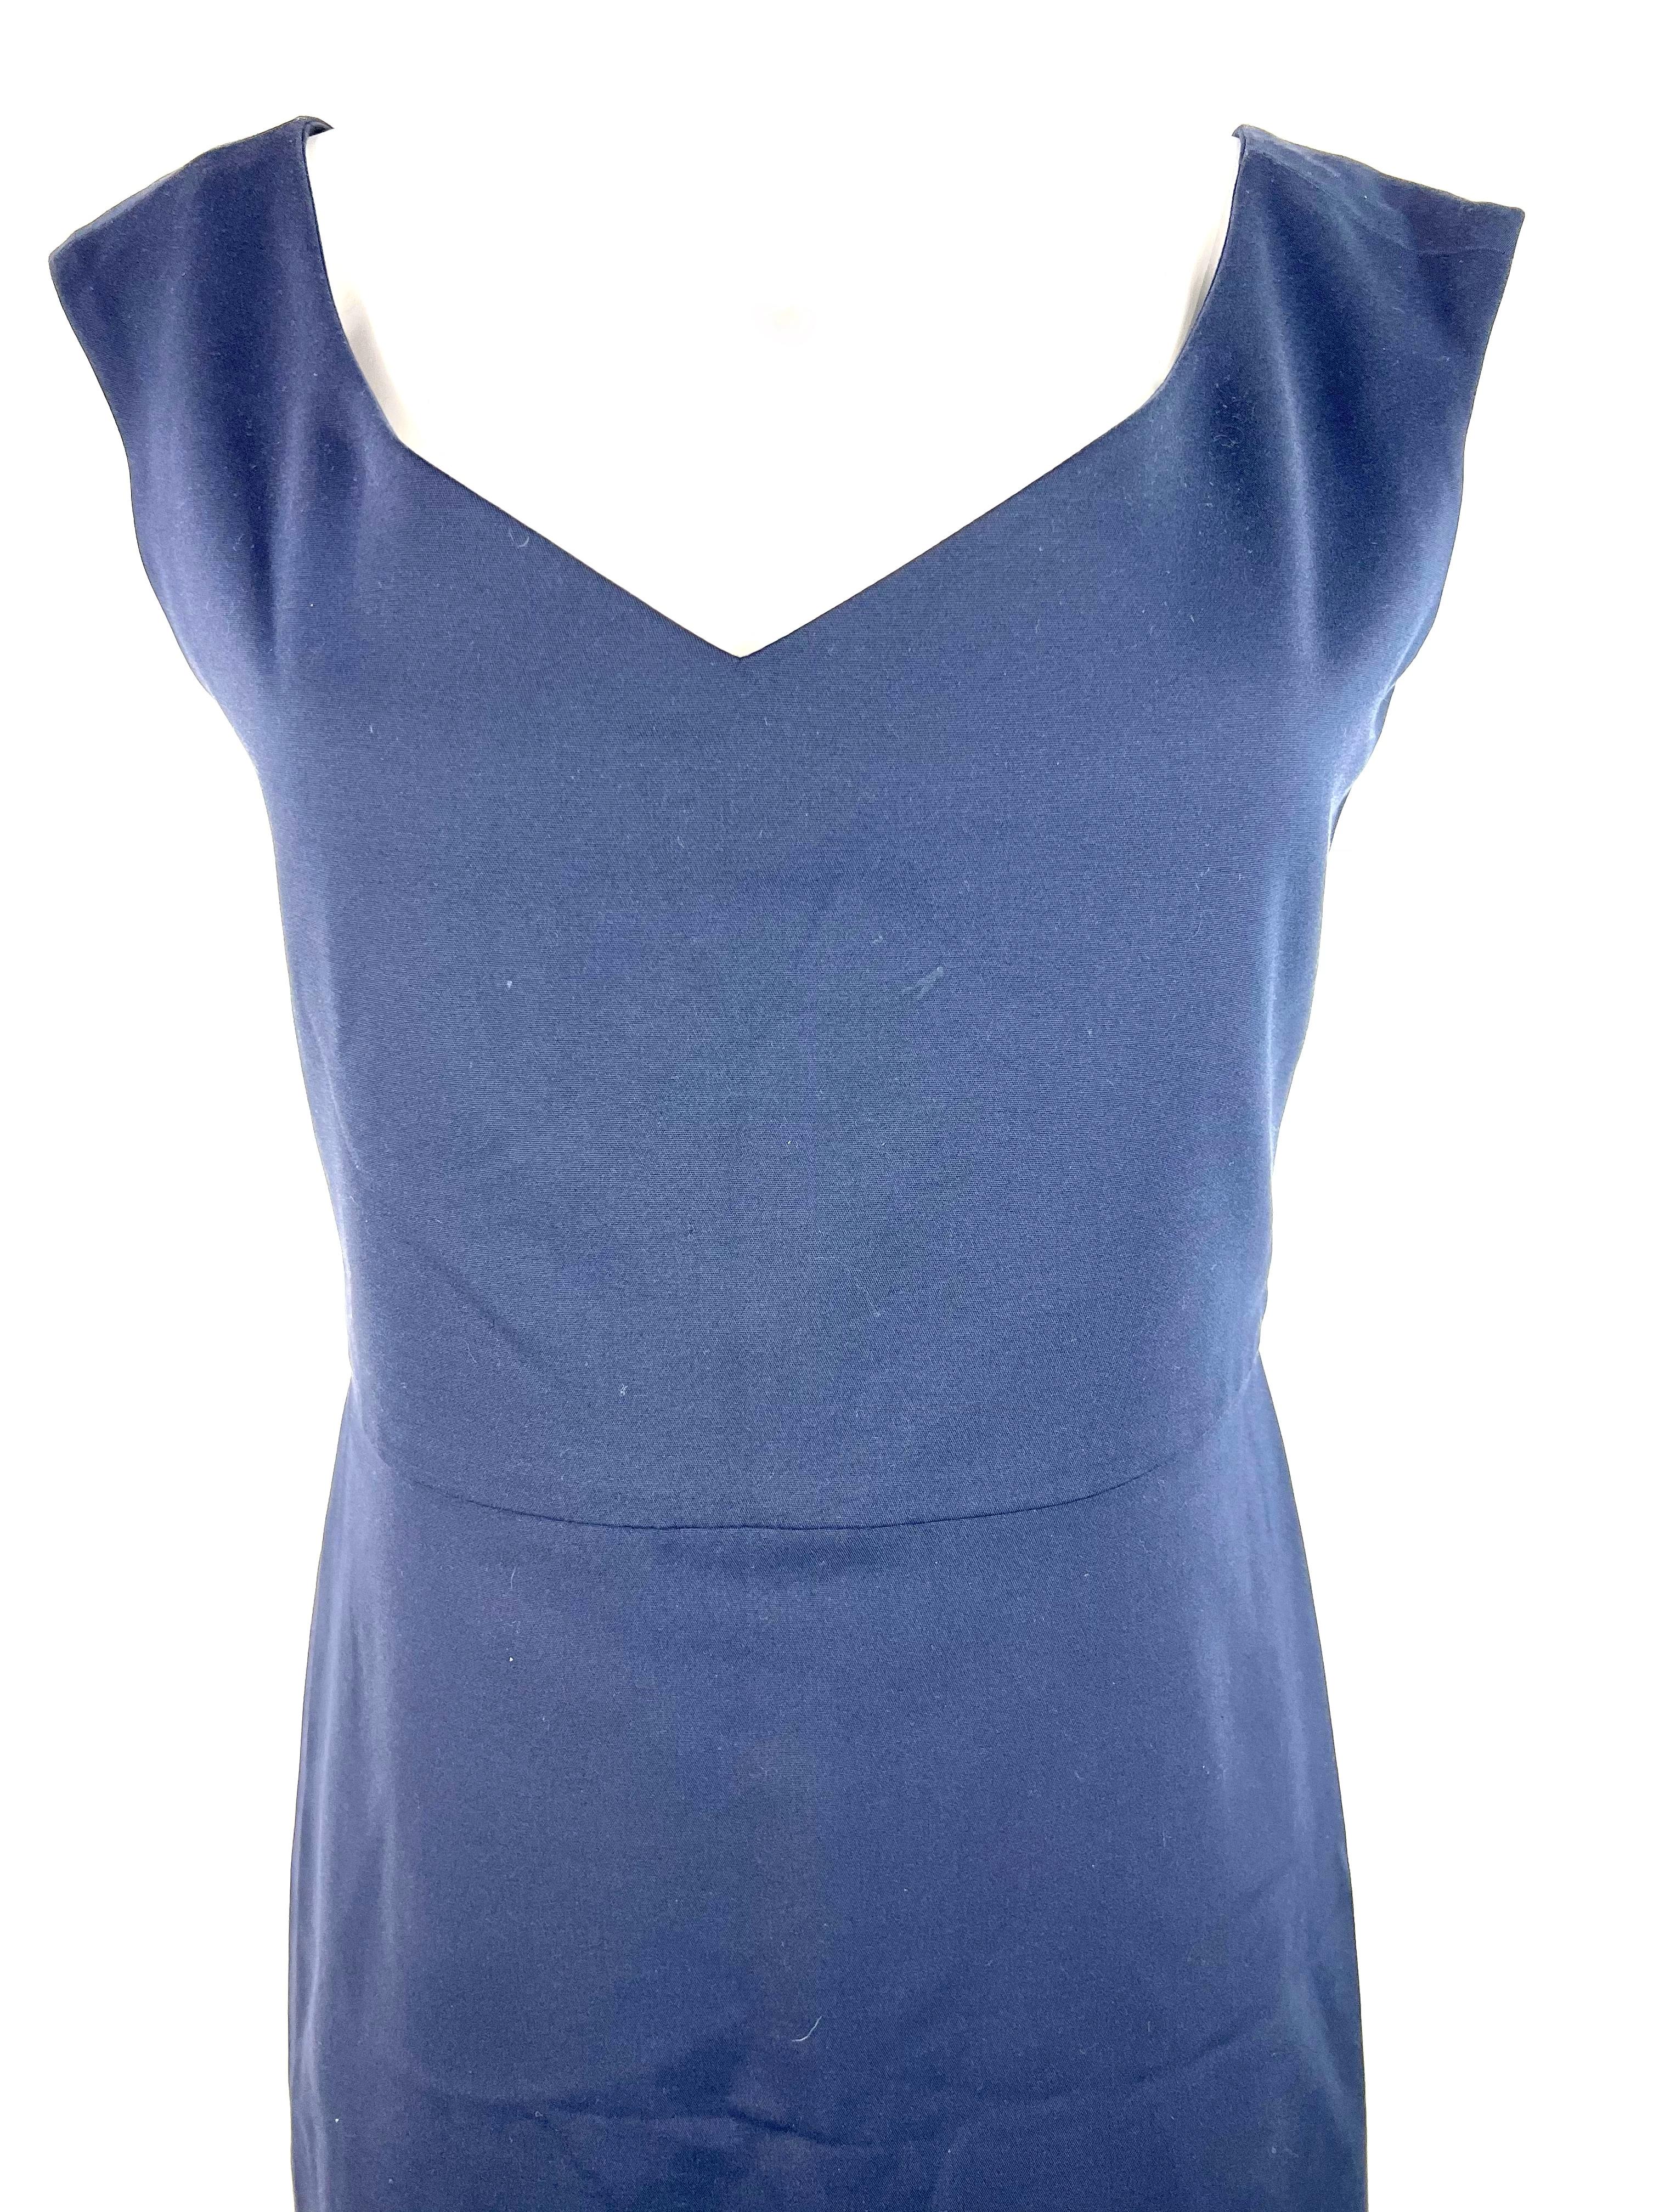 Détails du produit :

La robe présente une ligne de cou en V, un style décolleté et une jupe crayon.